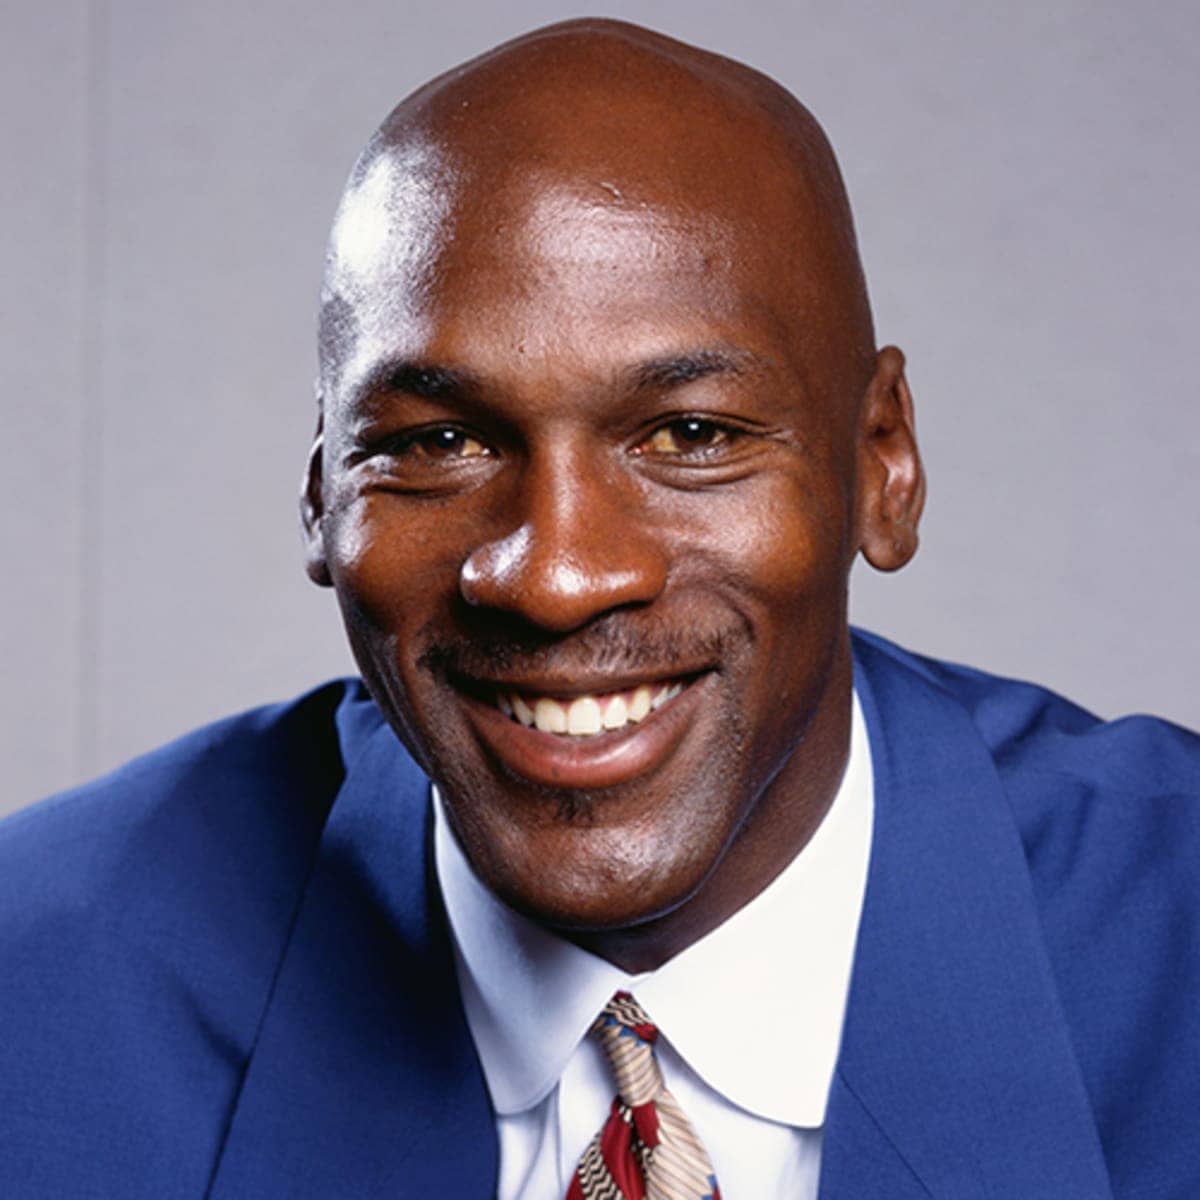 Image of Michael Jordan